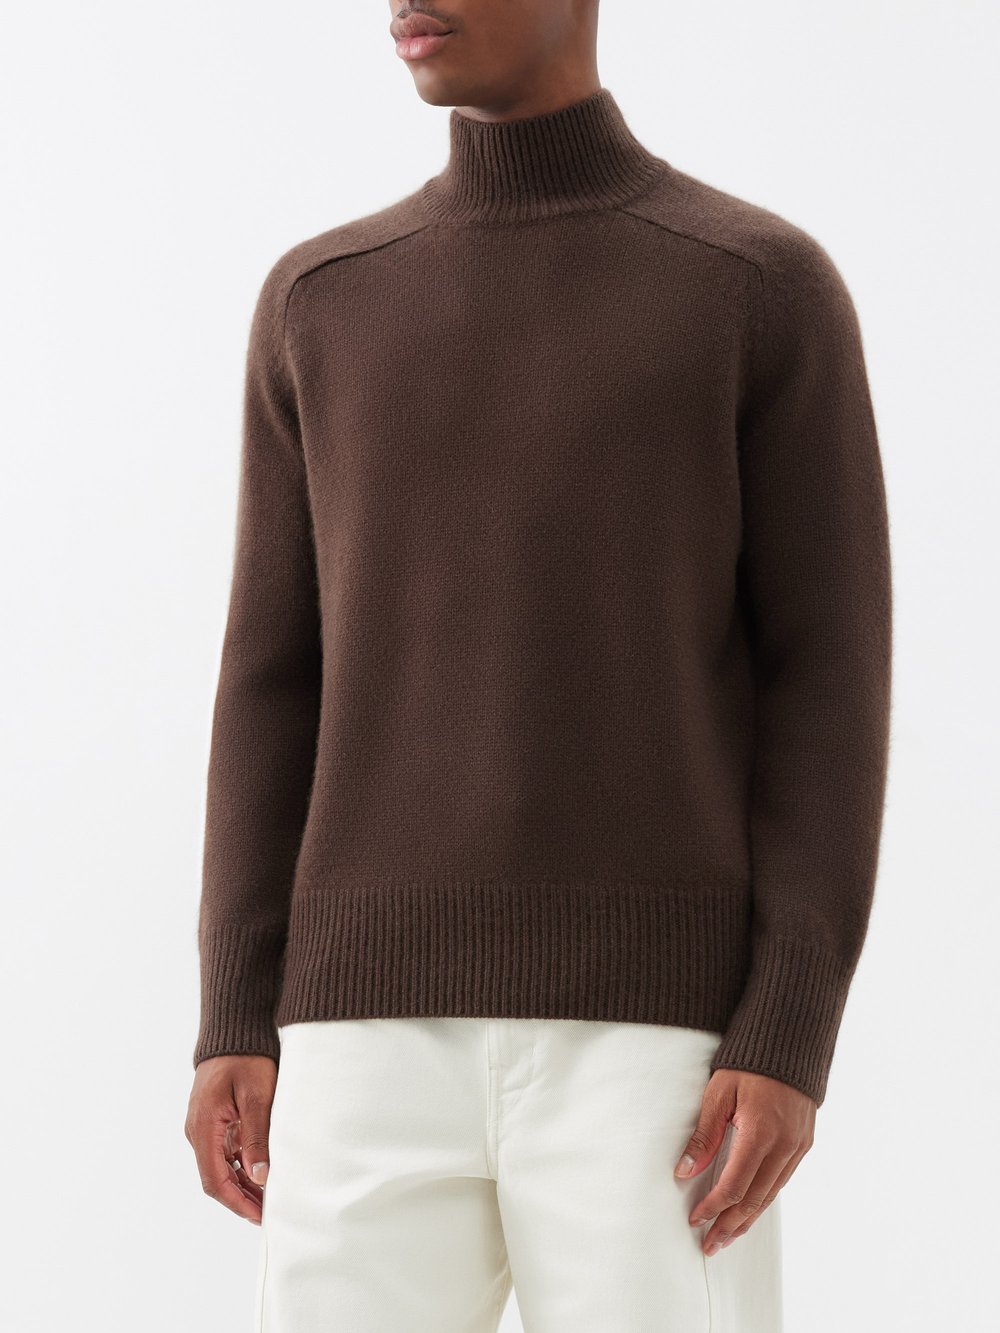 Кашемировый свитер mr edith grove с высоким воротником Arch4, коричневый